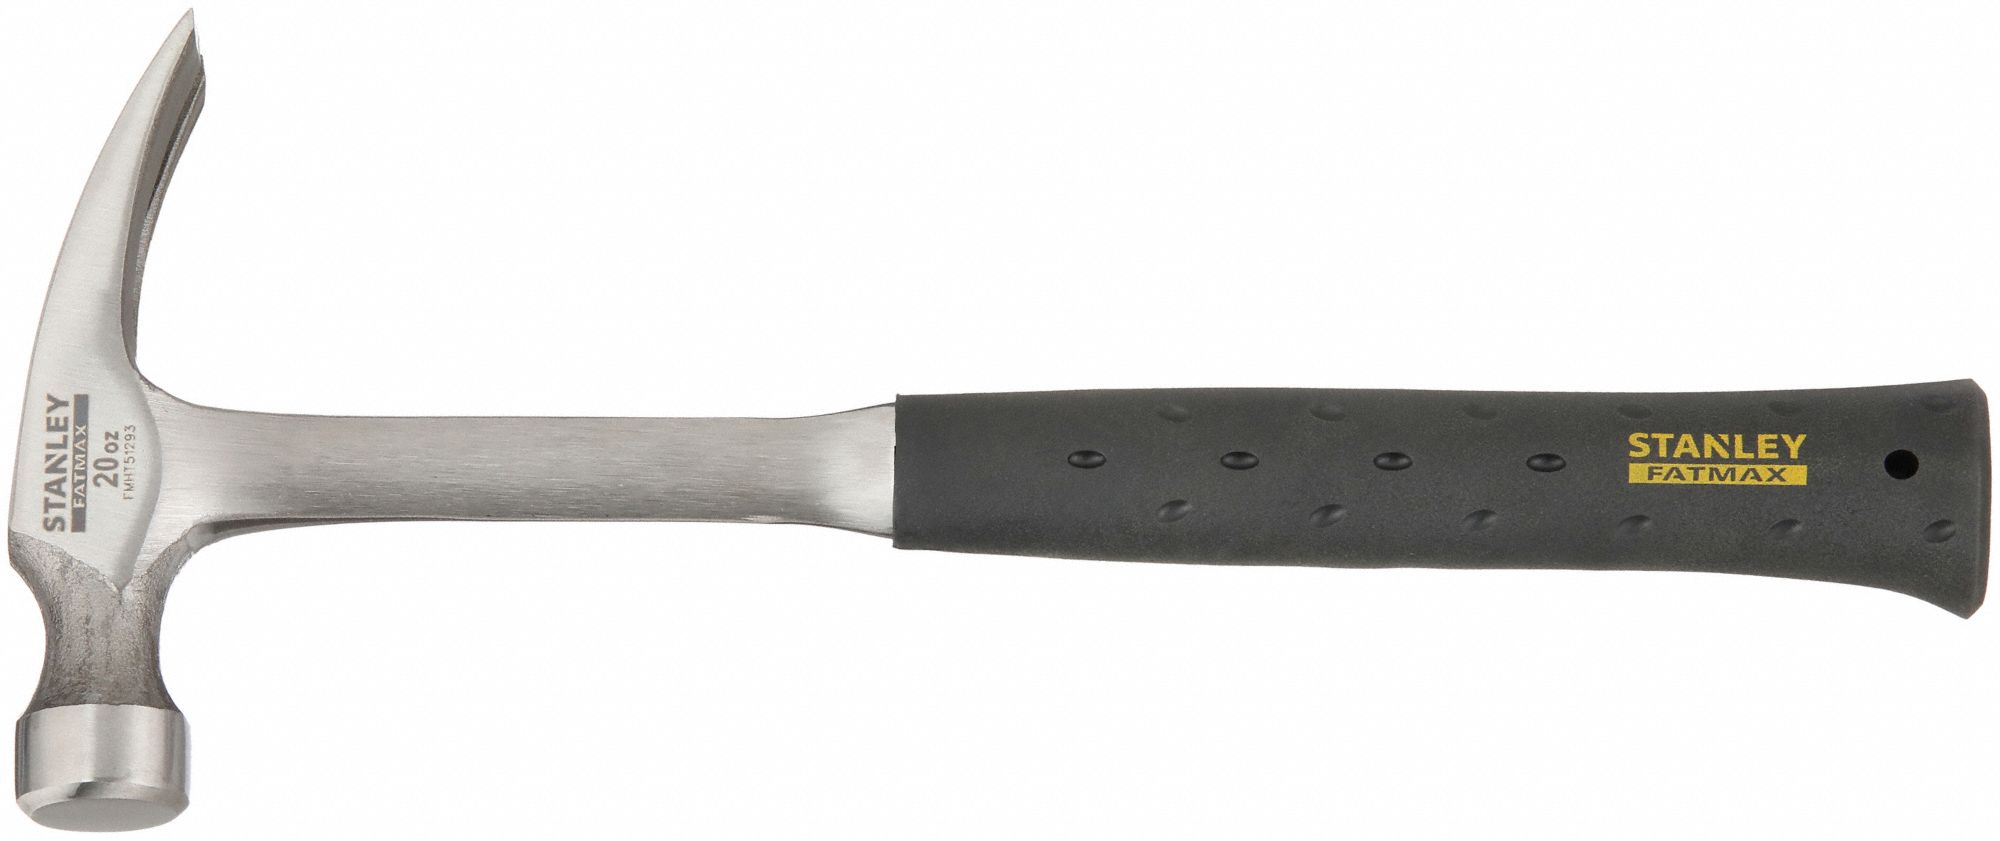 Steel, Textured Grip, Straight Claw Hammer 49XH52|FMHT51292 Grainger